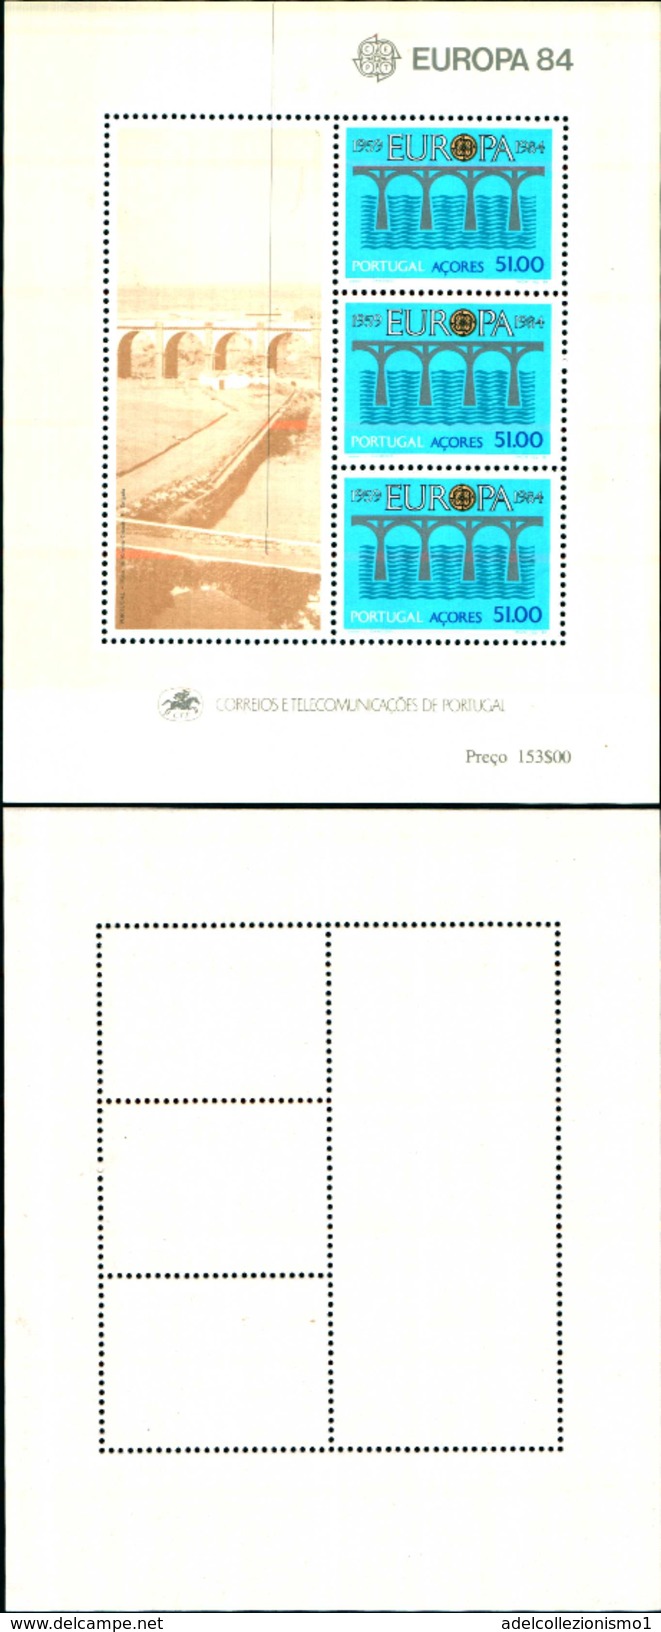 86796) 1984 Portogallo Azzorre Portugal Azores EUROPA CEPT EUROPE 1 Foglietto MNH** - Full Sheets & Multiples